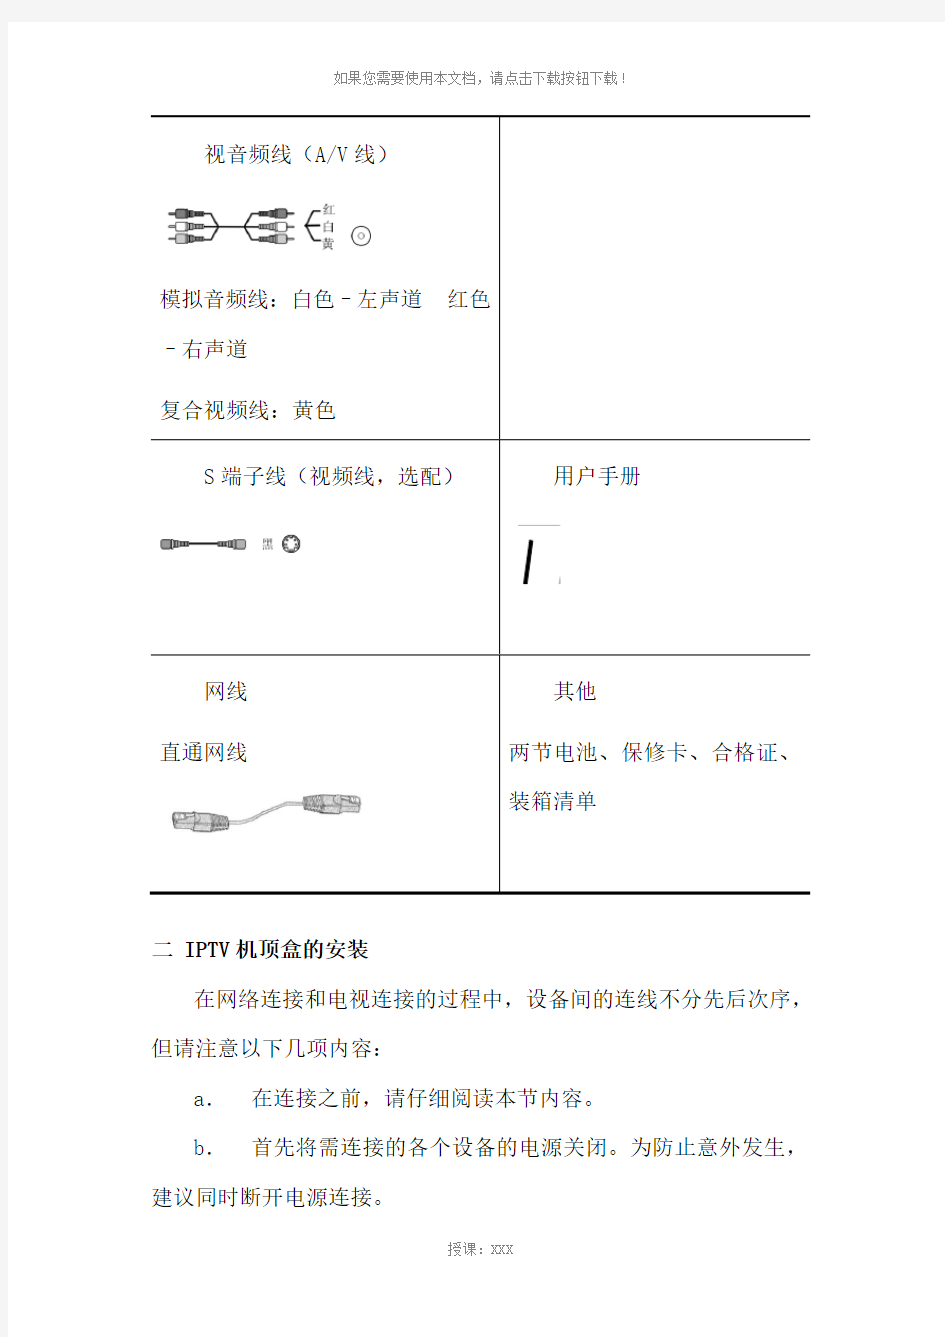 中国电信IPTV安装指导手册